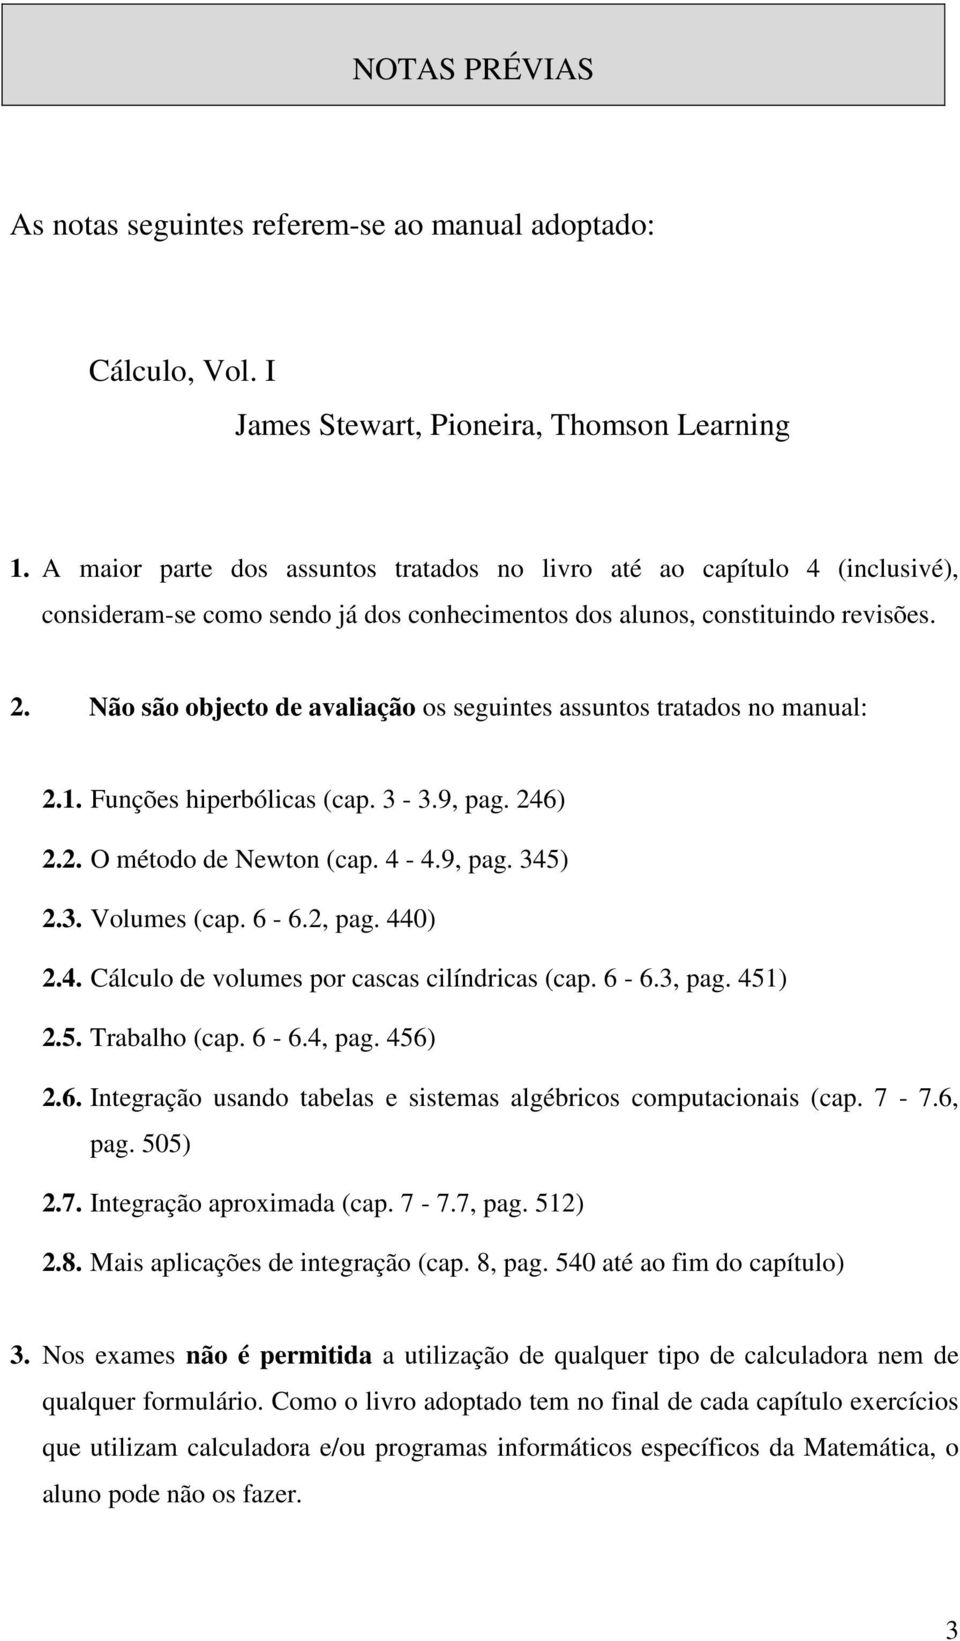 Volumes (cap 6-6, pag 0) Cálculo de volumes por cascas cilídricas (cap 6-6, pag 5) 5 Trabalho (cap 6-6, pag 56) 6 Itegração usado tabelas e sistemas algébricos computacioais (cap 7-76, pag 505) 7